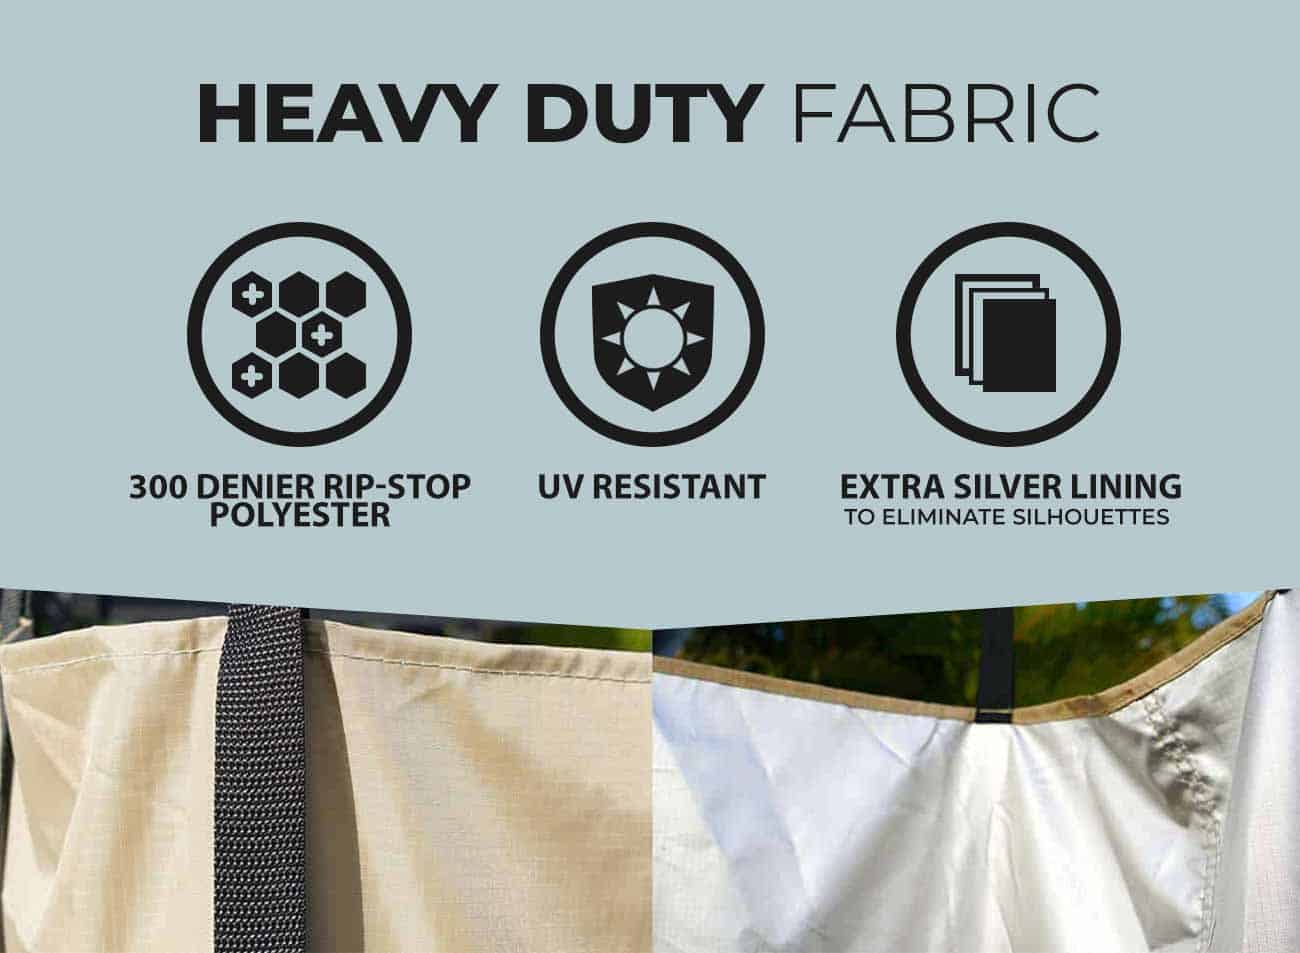 Heavy duty fabric